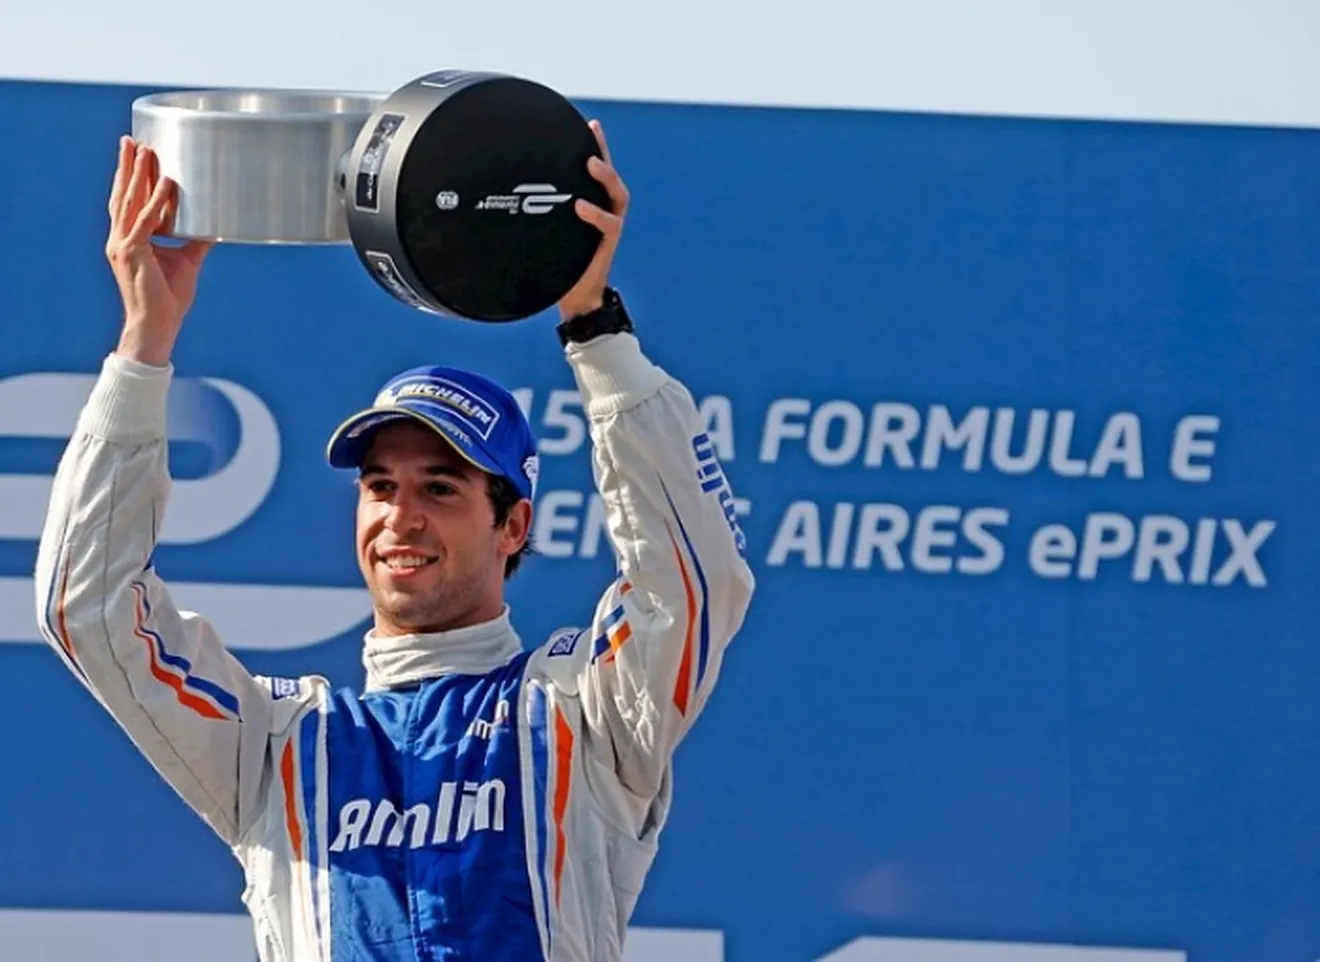 Fórmula E: Da Costa gana una loca carrera en Buenos Aires, Argentina